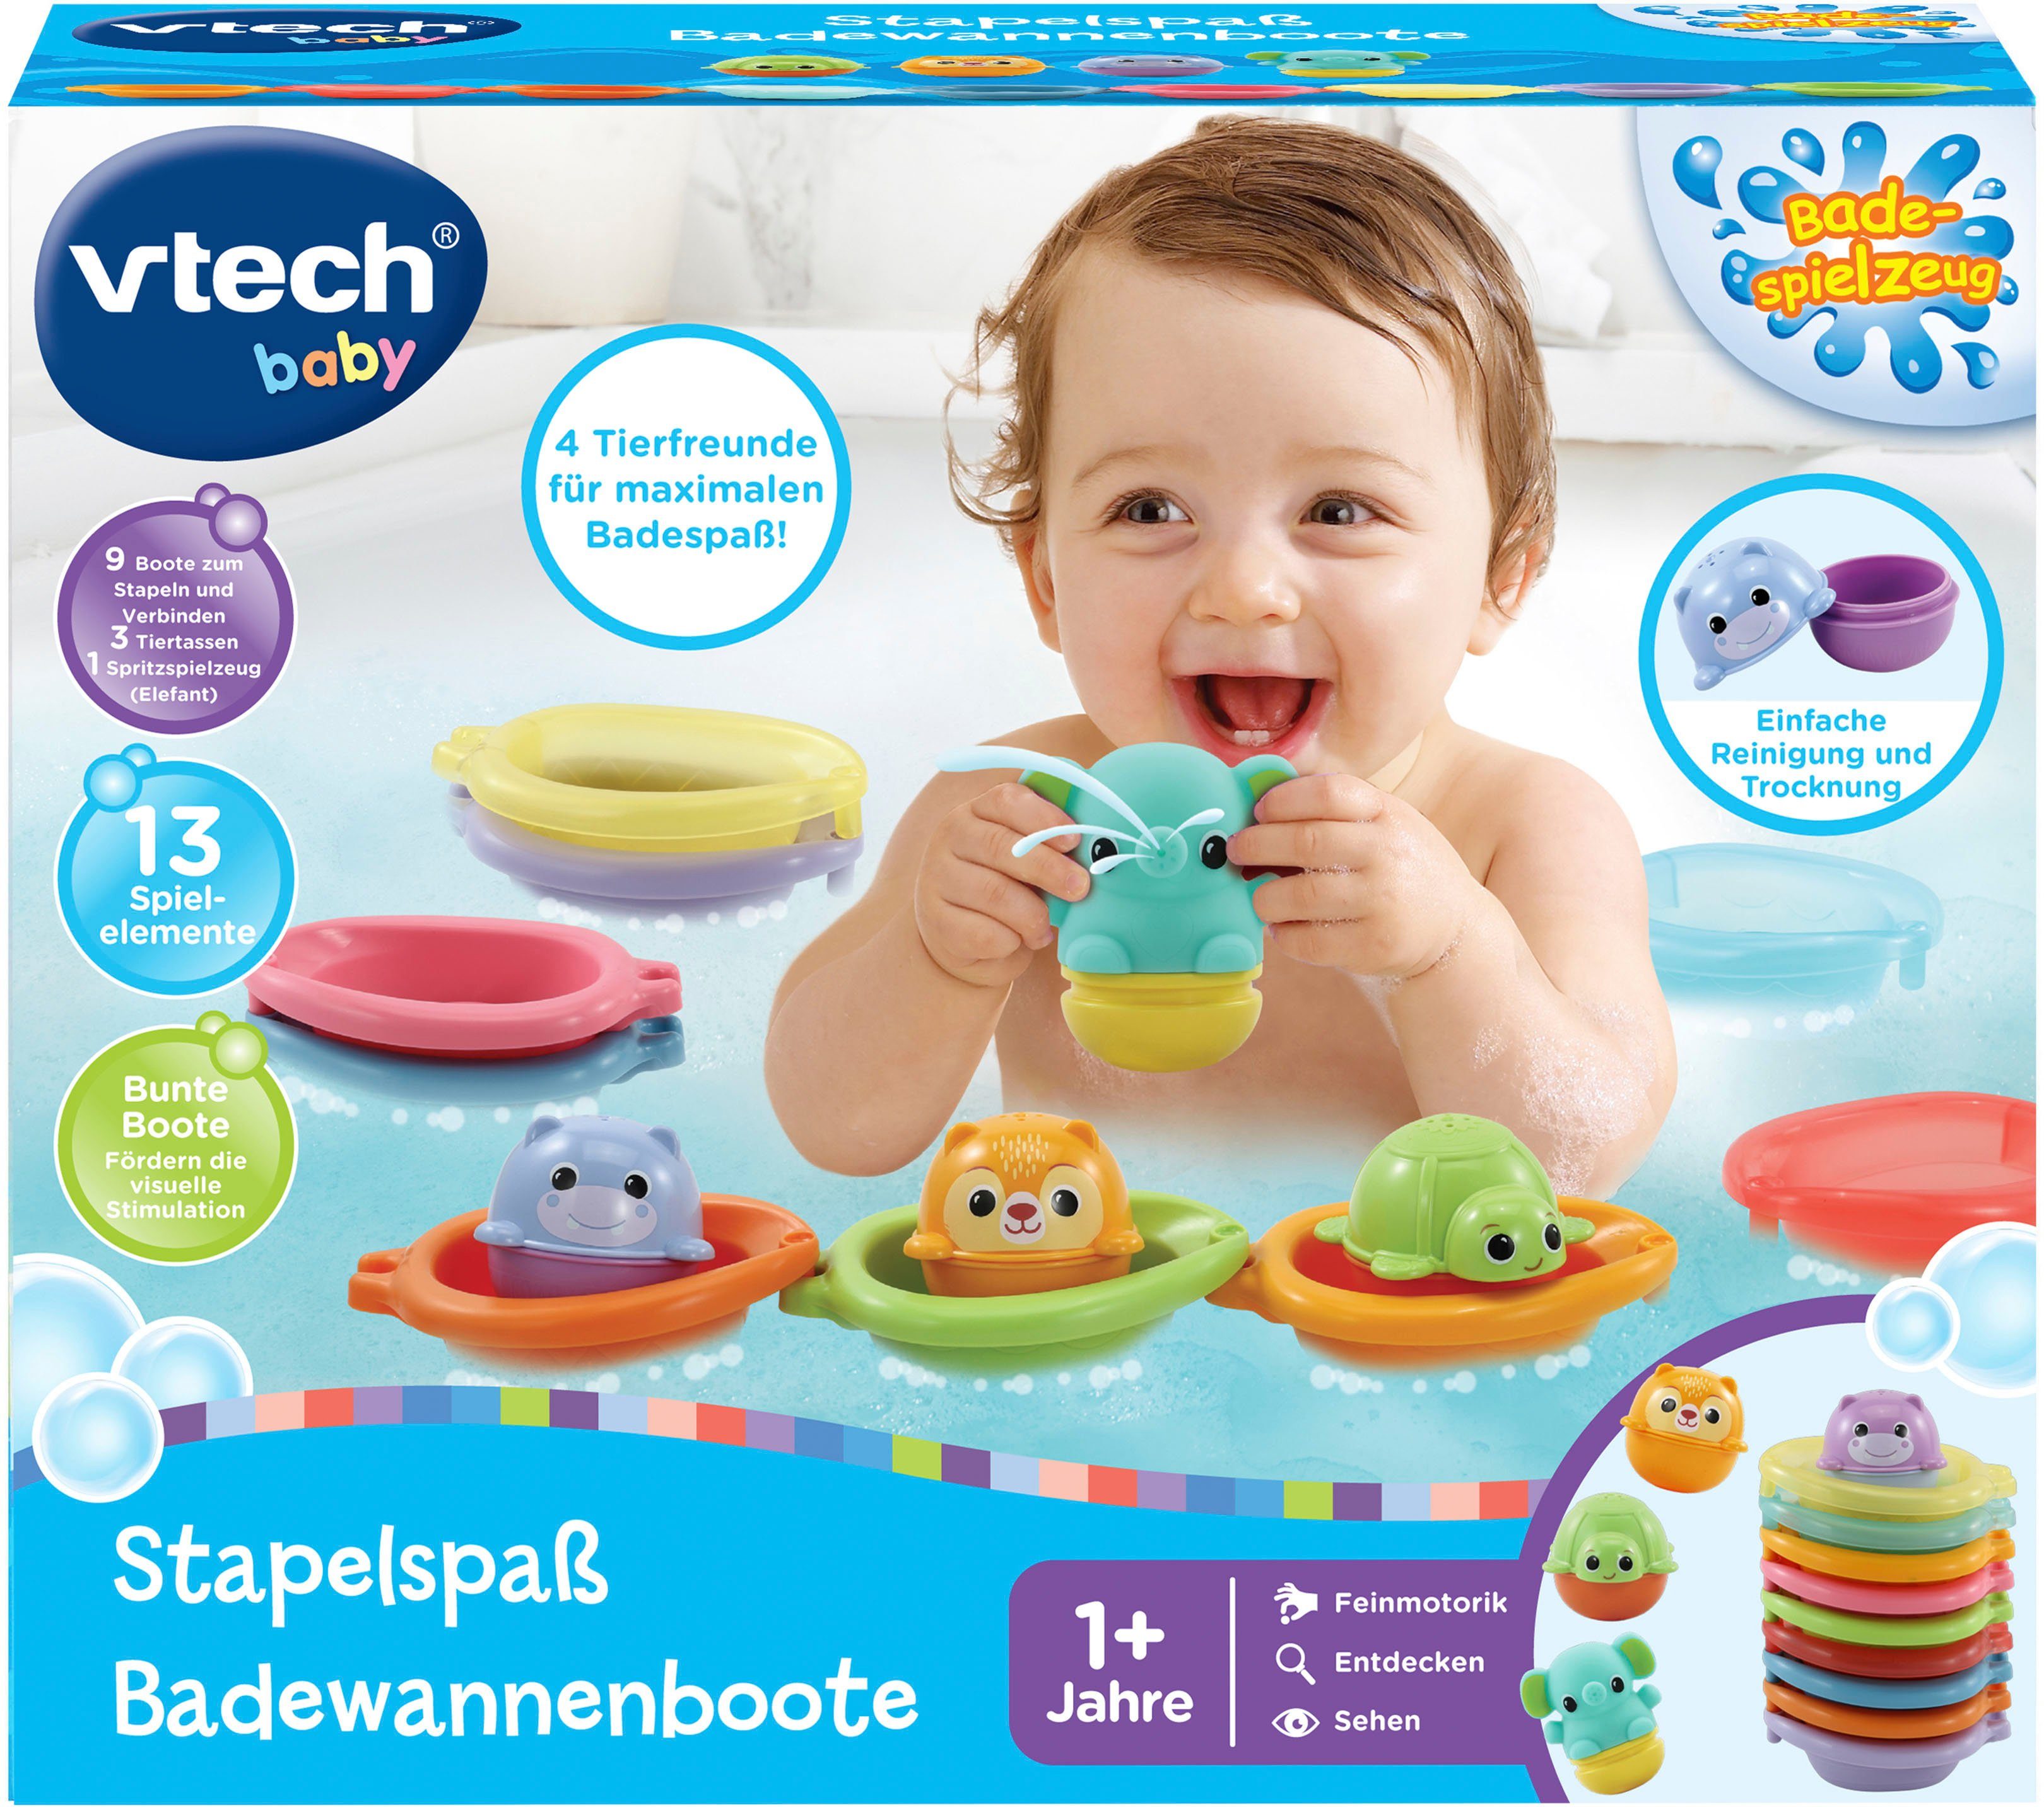 Vtech® Badespielzeug Vtech Baby, Stapelspaß Badewannenboote